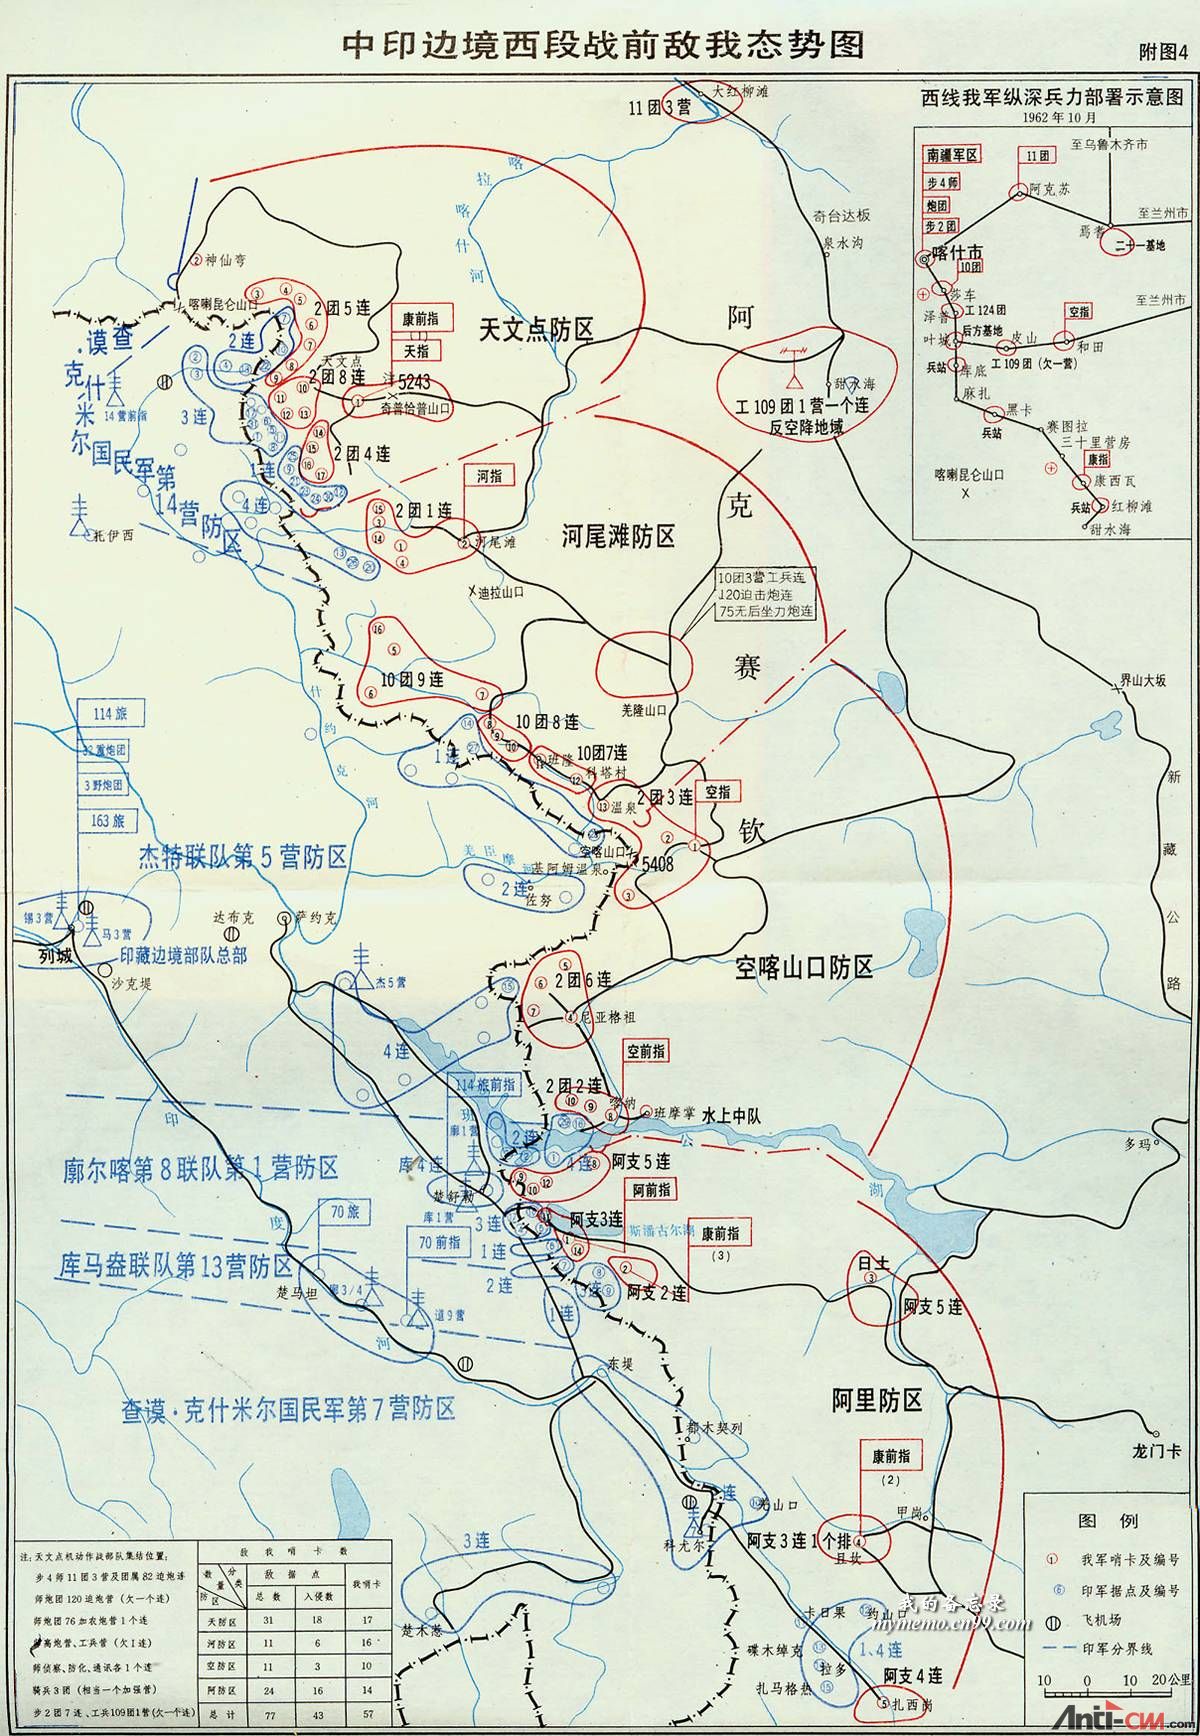 上传一张网上找到的，中印边境西段作战前两军部署态势图.jpg